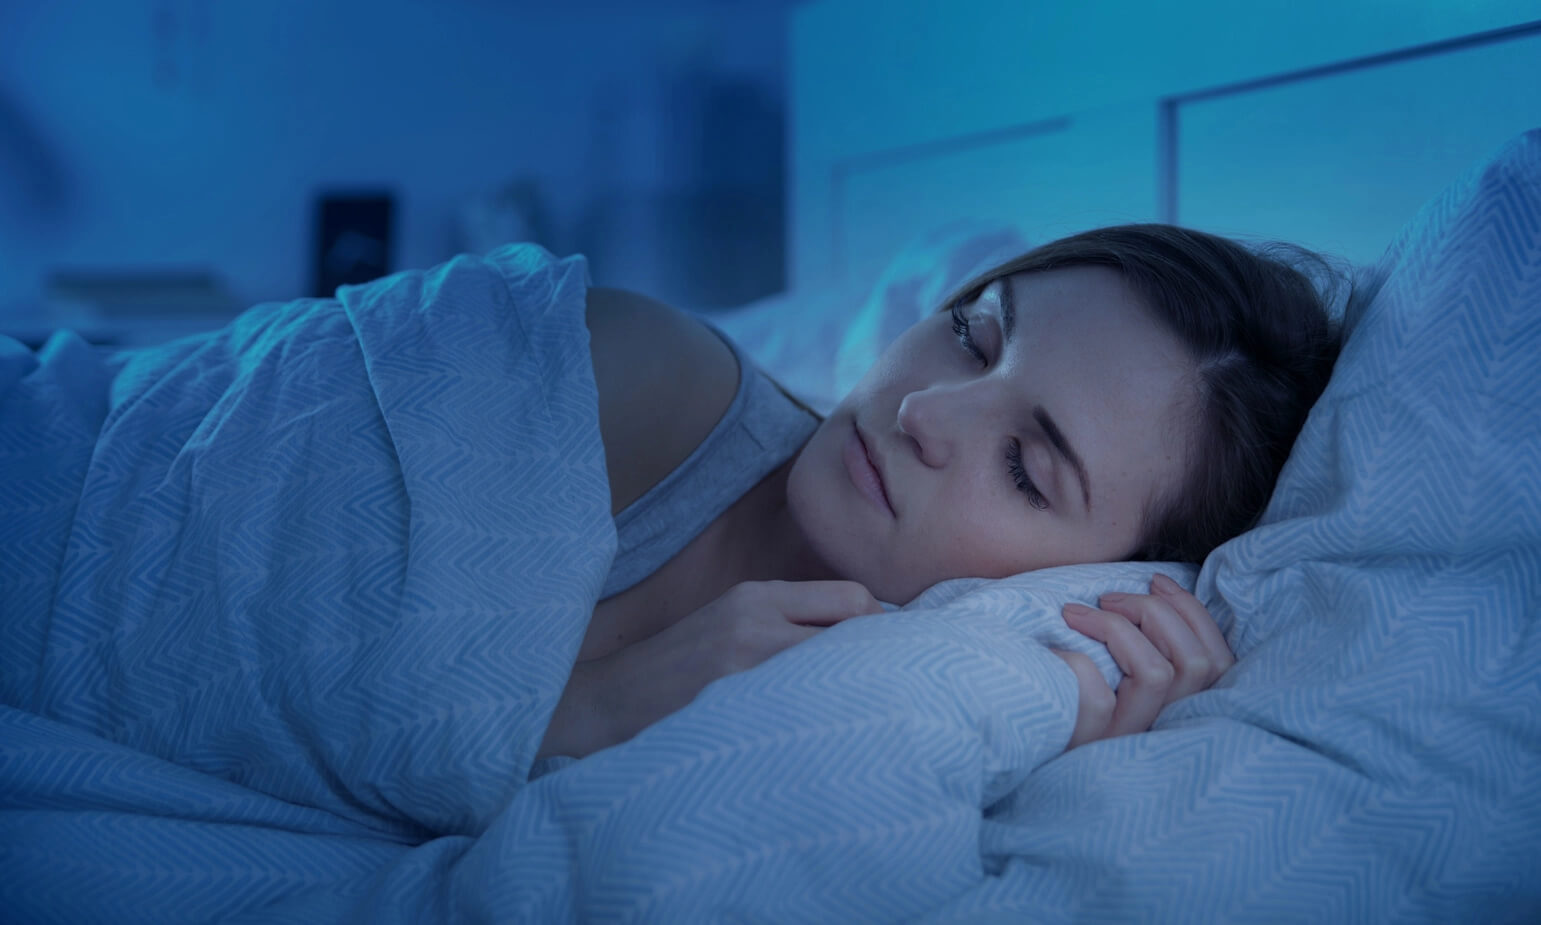 Đi ngủ đúng giờ vào buổi tối là cách để dễ ngủ và duy trì giấc ngủ sâu.